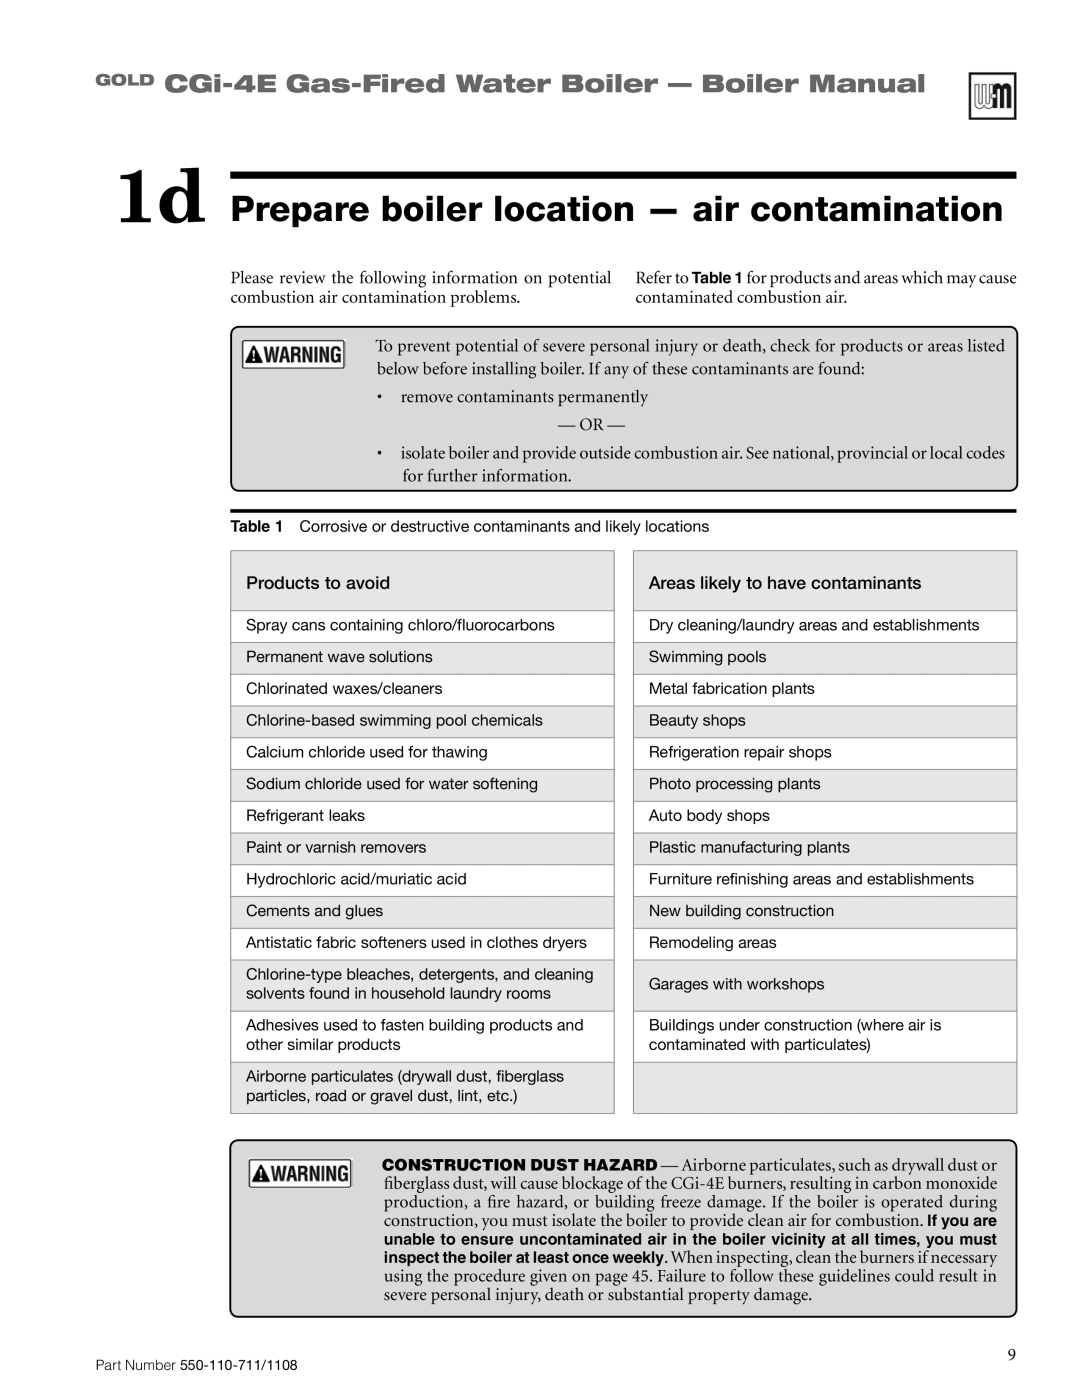 Weil-McLain CGI-4E manual 1d Prepare boiler location - air contamination, GOLD CGi-4E Gas-FiredWater Boiler - Boiler Manual 